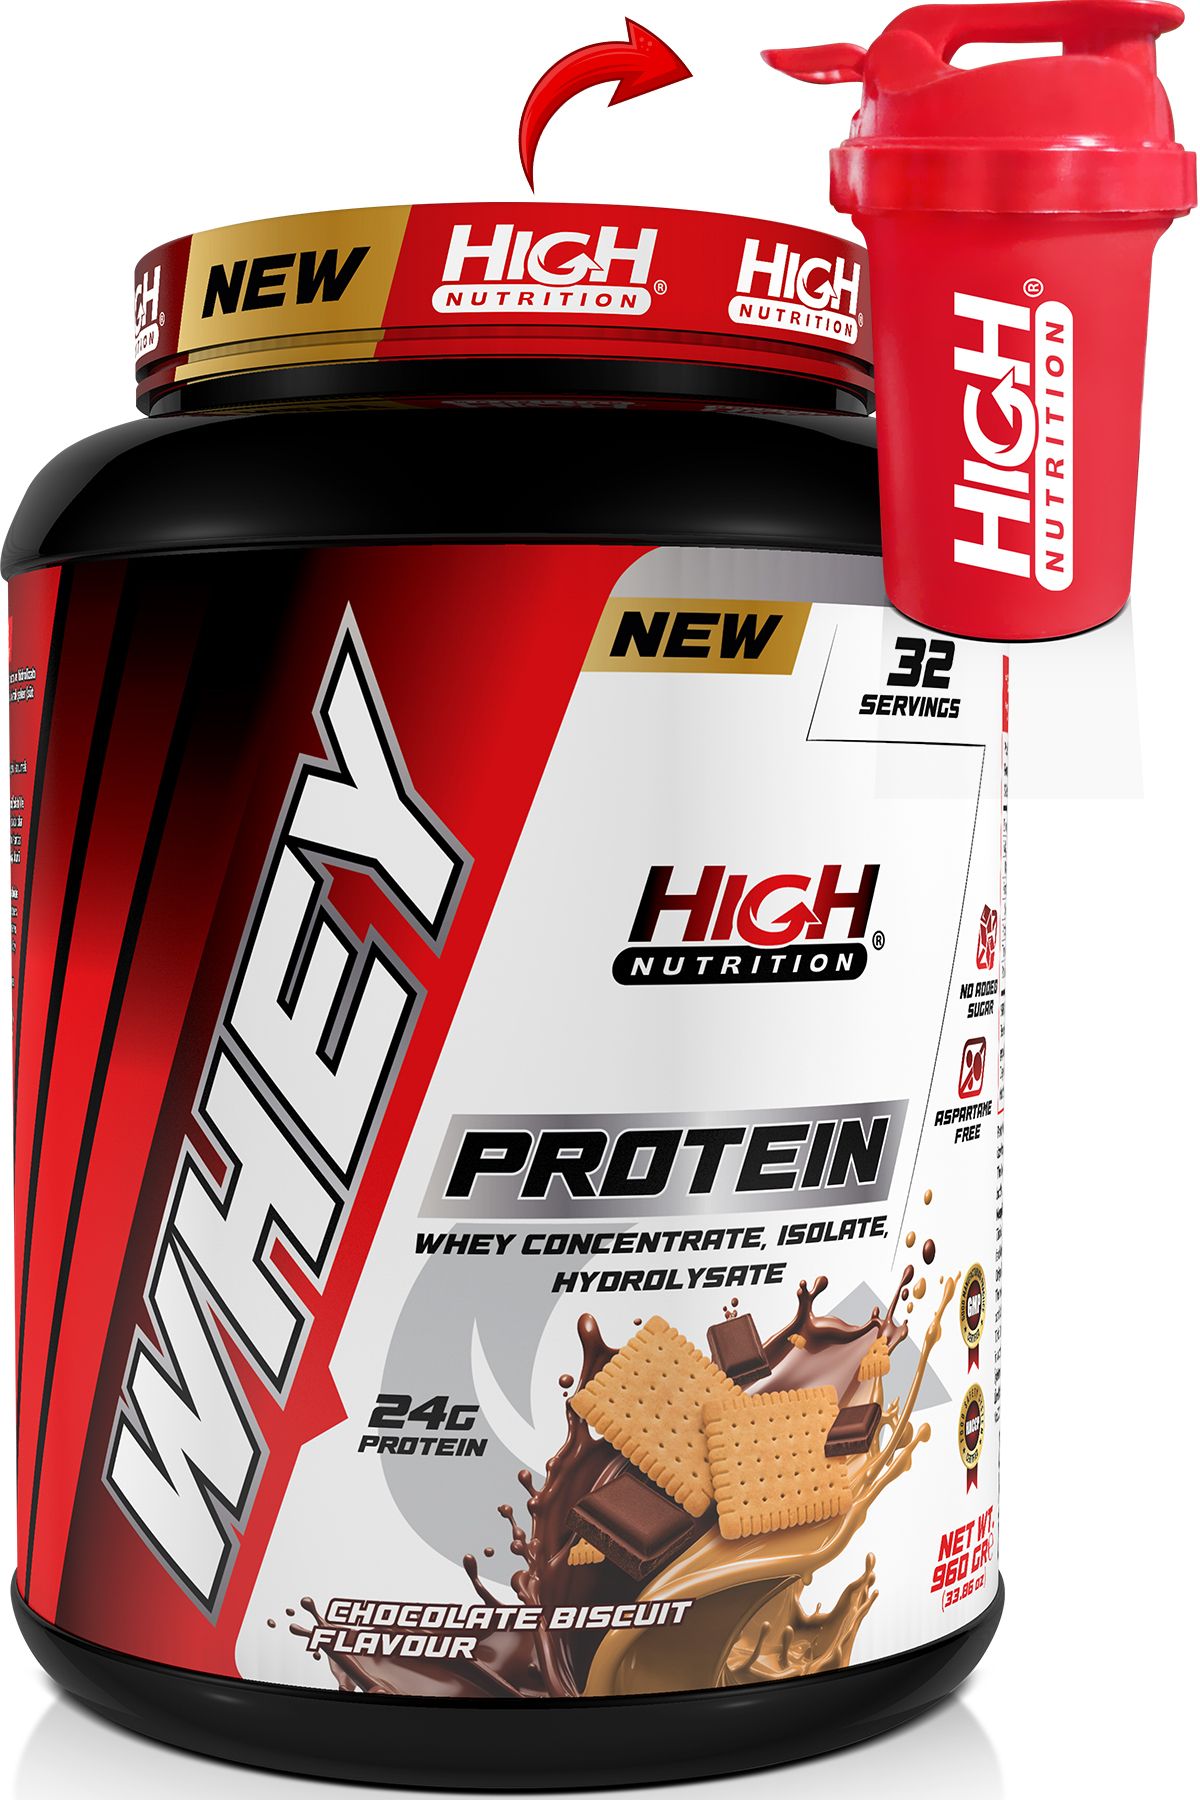 High Nutrition Whey Protein 960 gr Çikolata Bisküvi Aromalı Protein Tozu 24 gram Protein 32 Servis Shaker Hediye